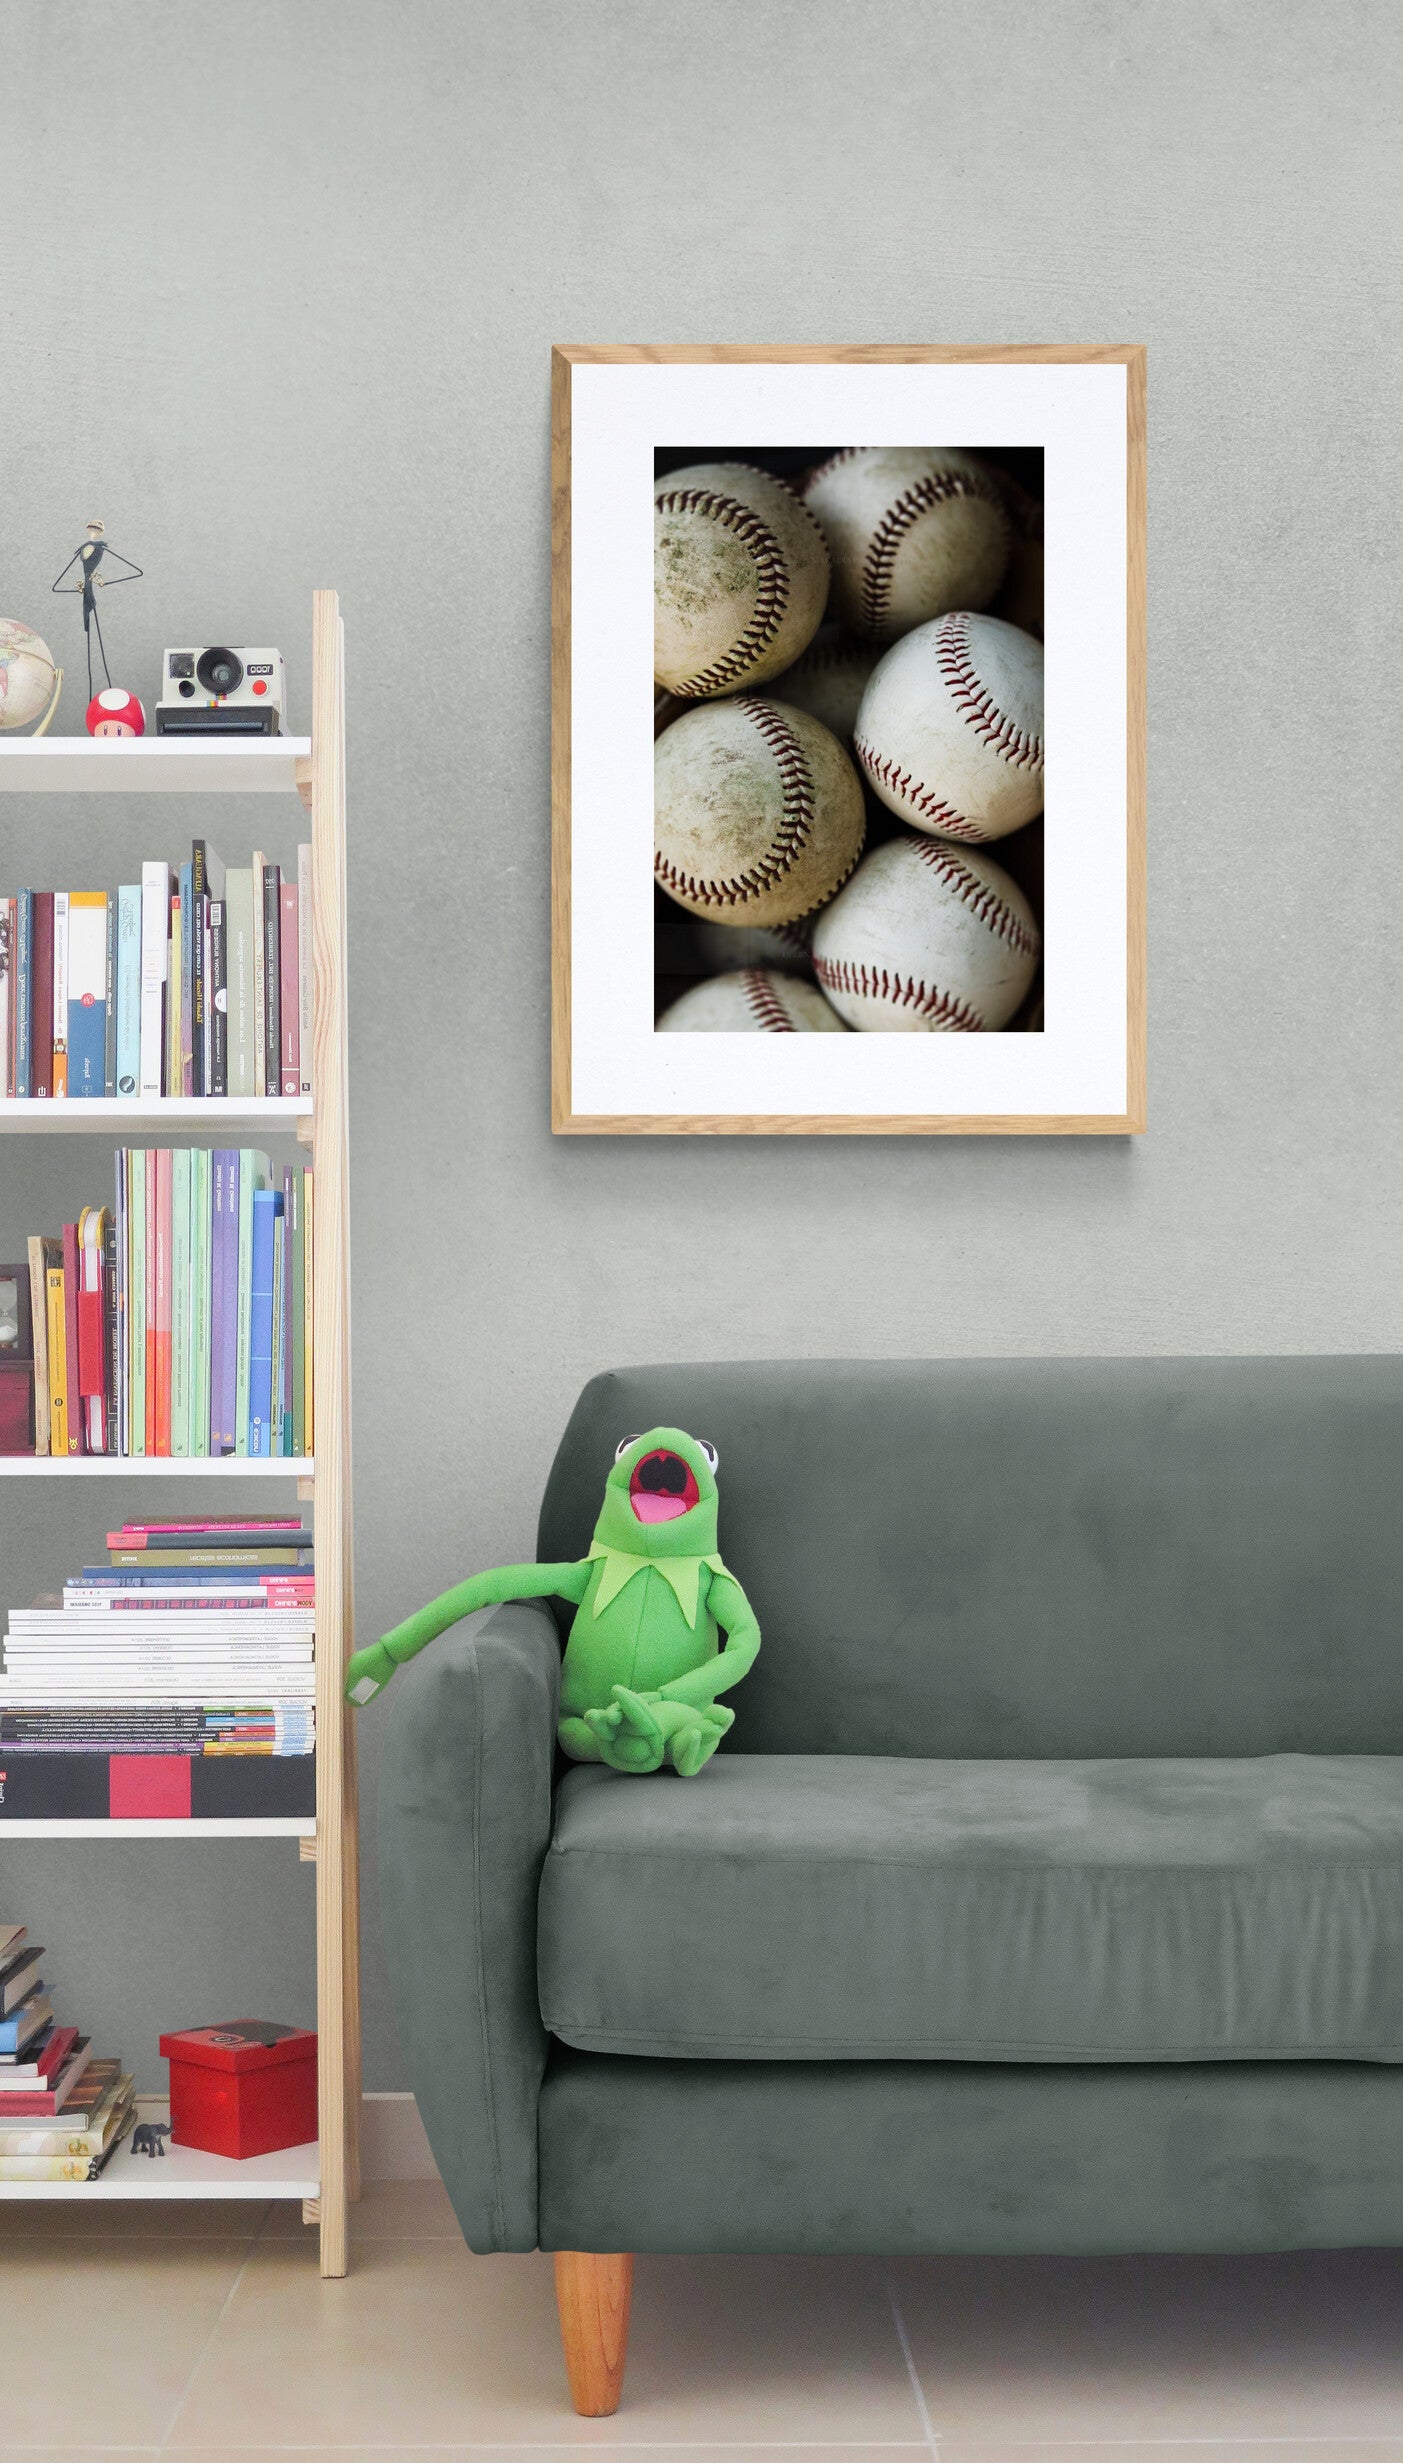 Baseballs Photograph Print as Playroom Wall Art